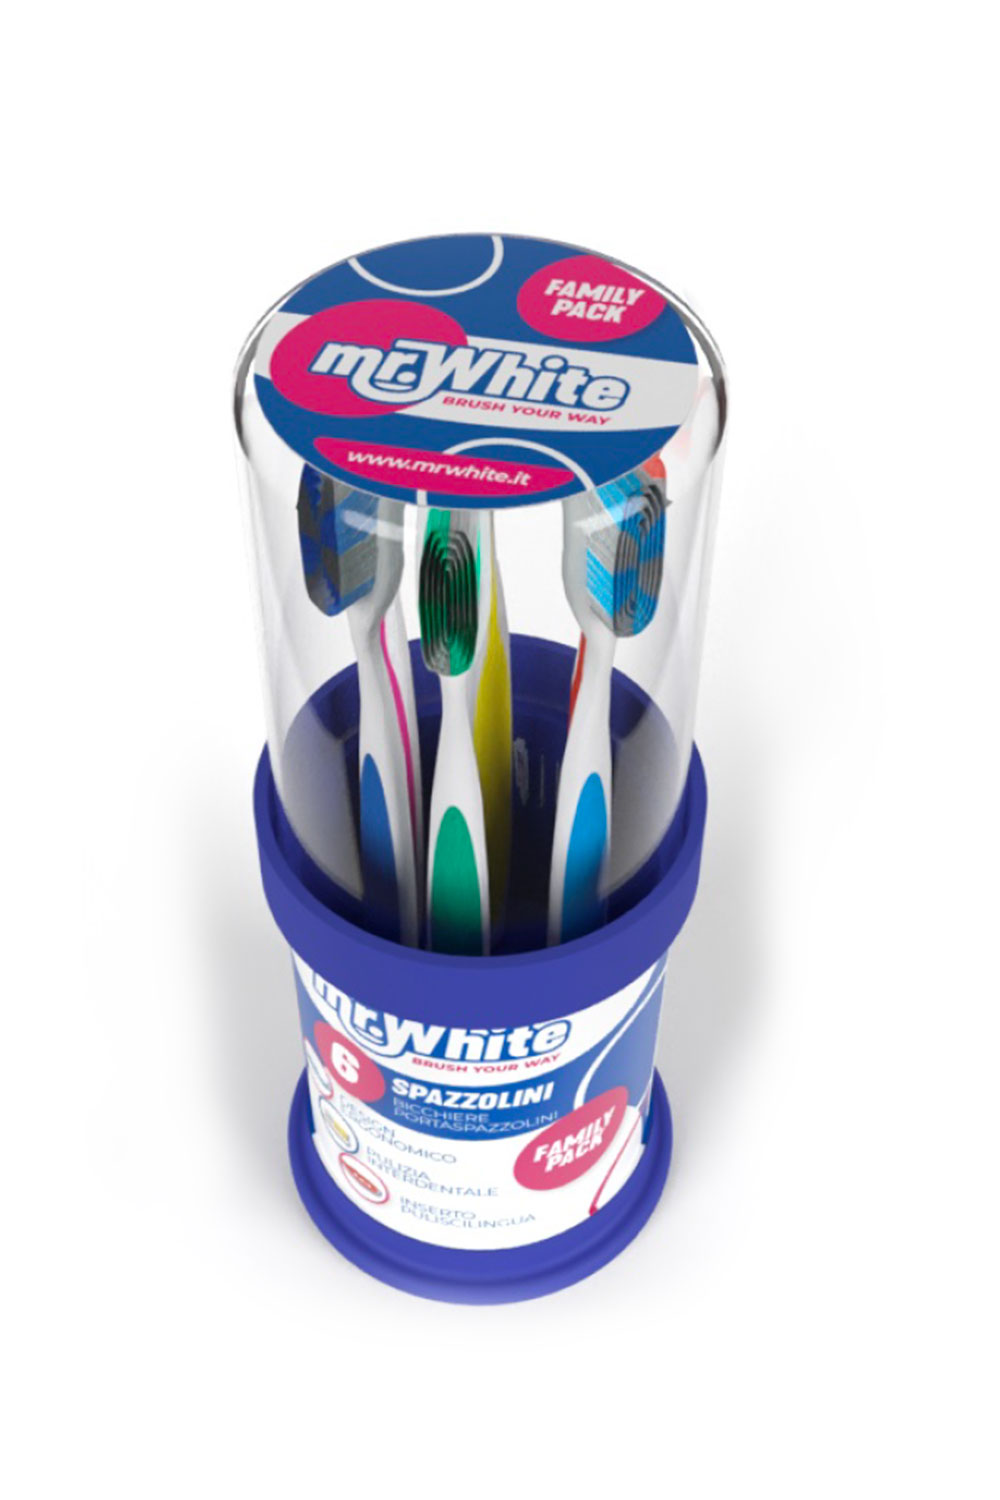 Mr.White 6 adult toothbrush kit